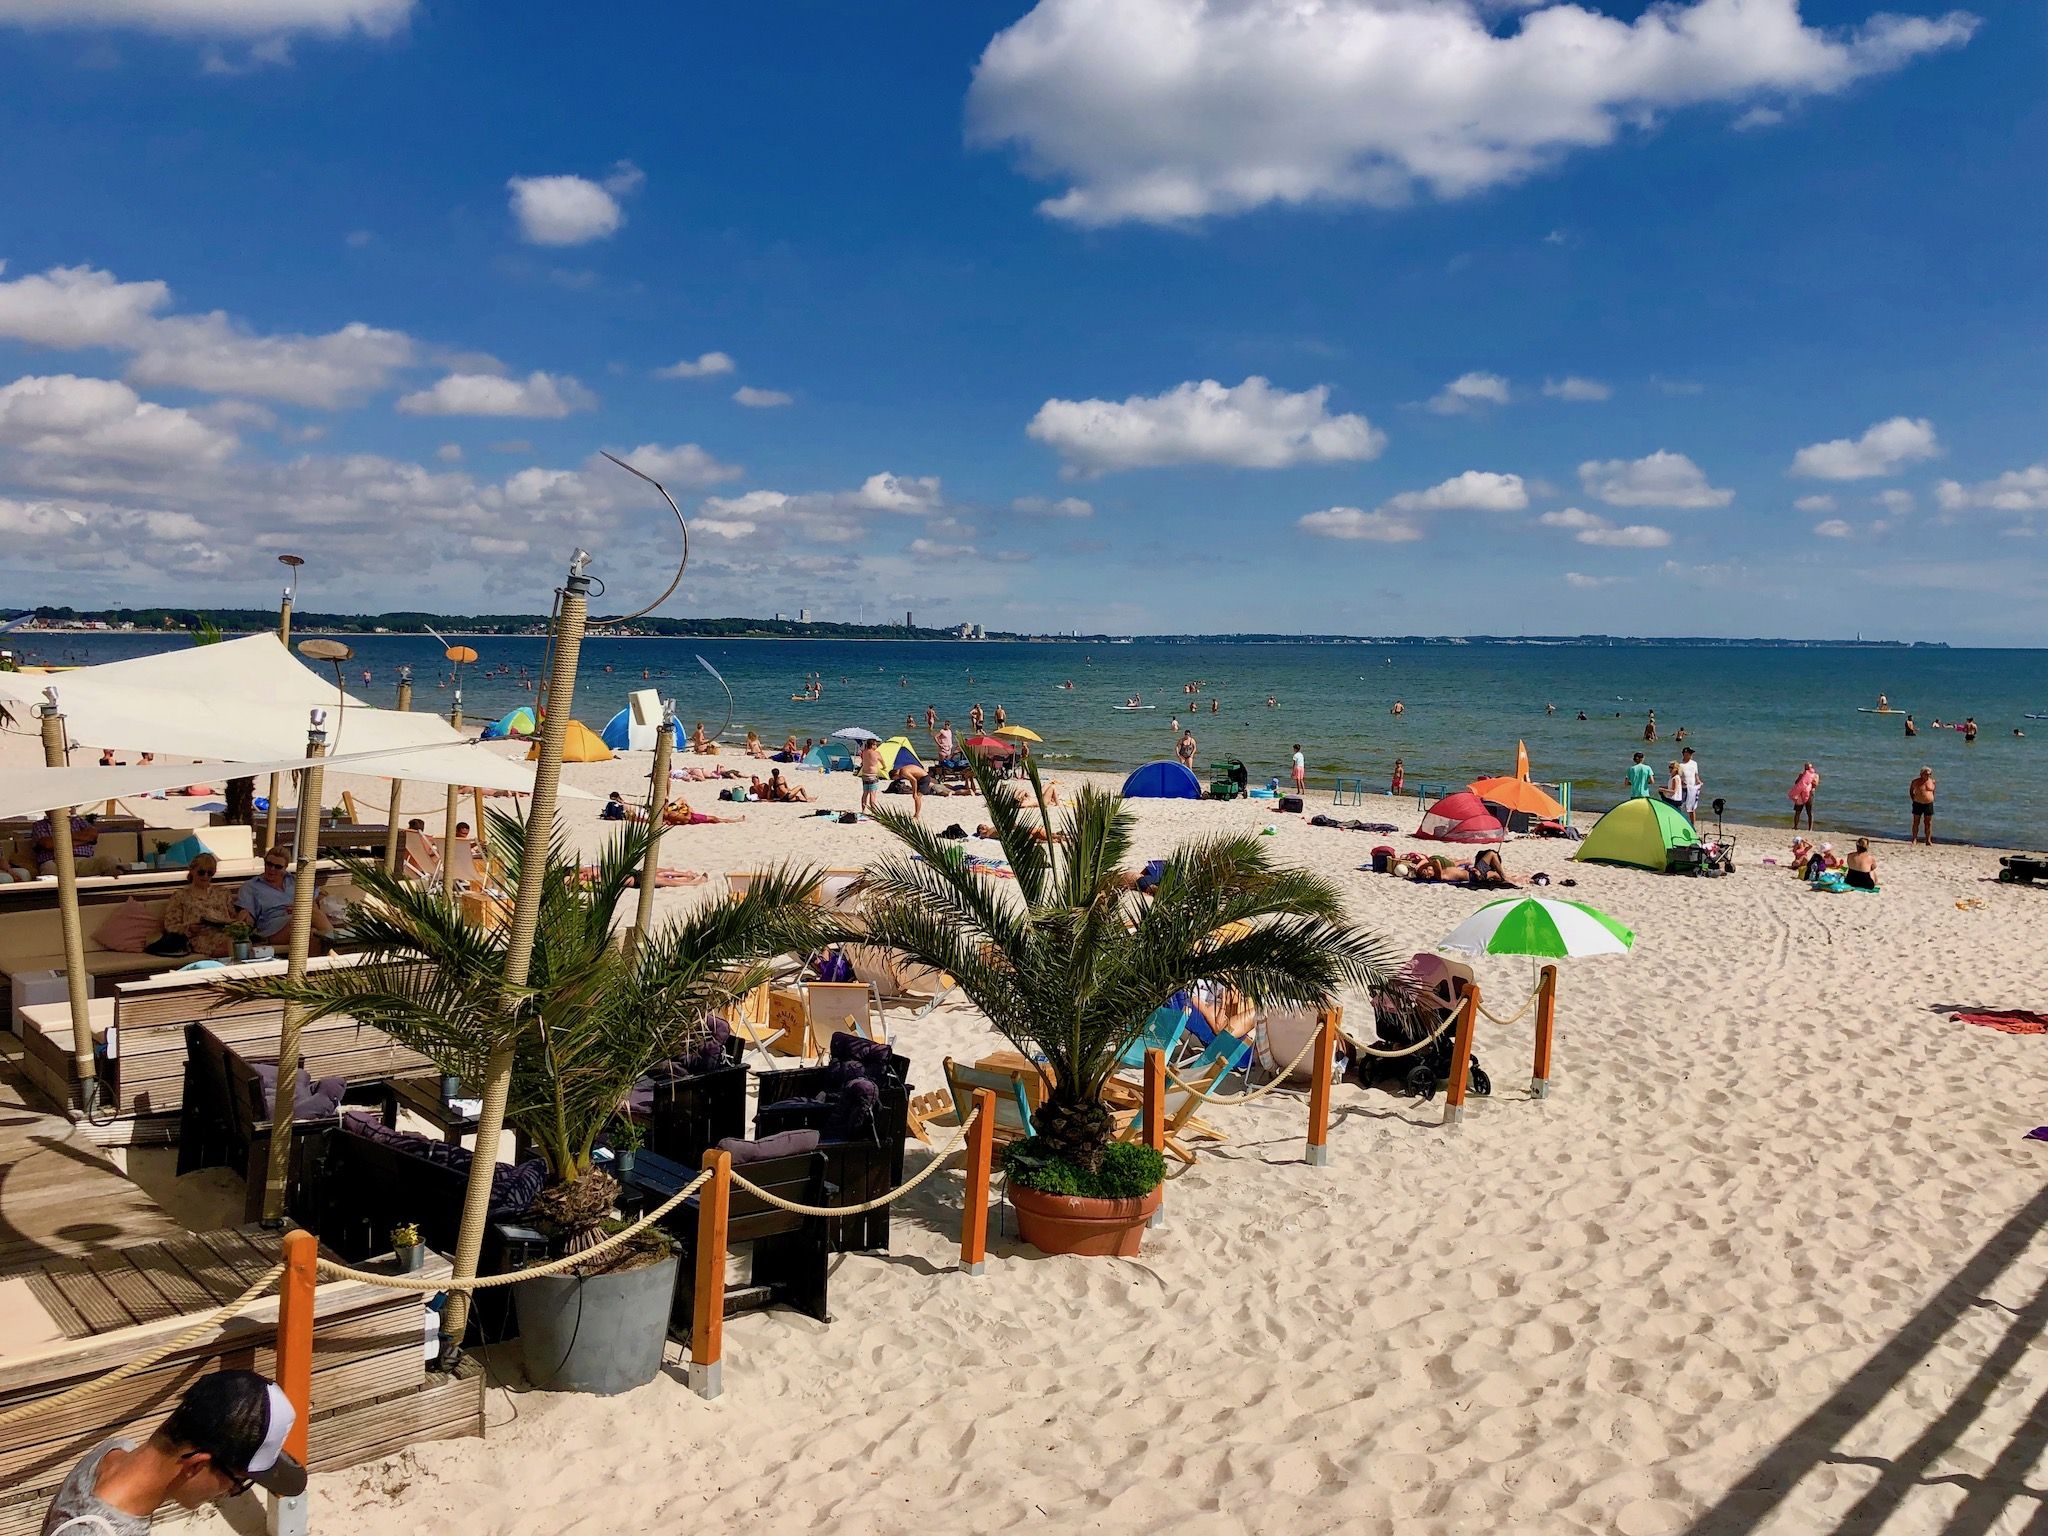 Reisebericht Scharbeutz: Insider-Tipps für den perfekten Sommerurlaub am Meer